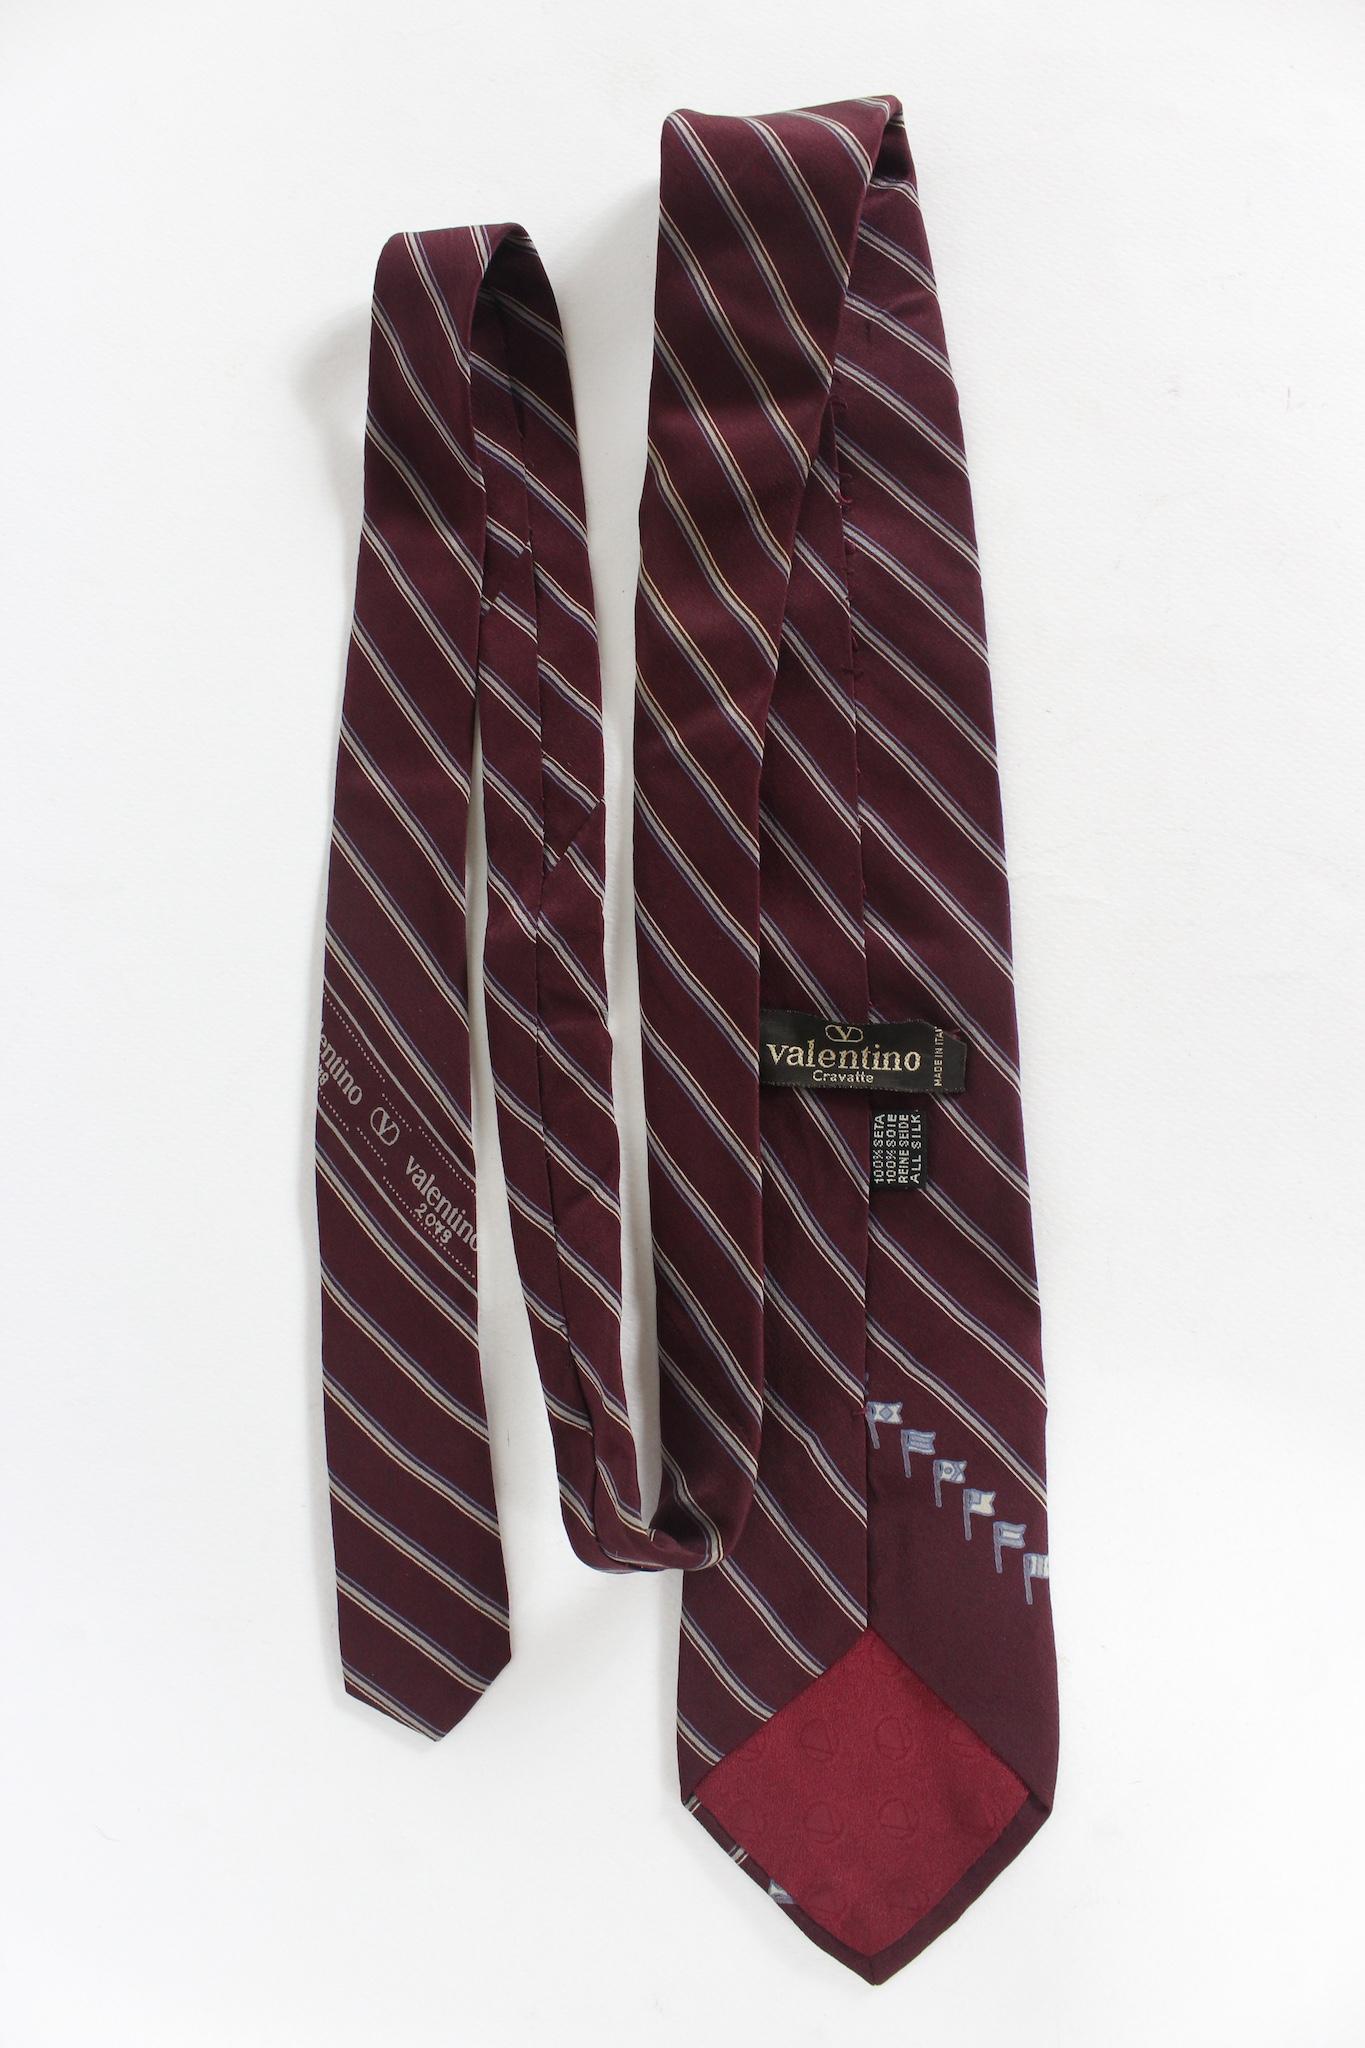 Valentino Vintage-Krawatte aus den 90ern. Rote Farbe mit beigen Streifen. stoff aus 100% Seide. Hergestellt in Italien.

Länge: 143 cm
Breite: 8 cm